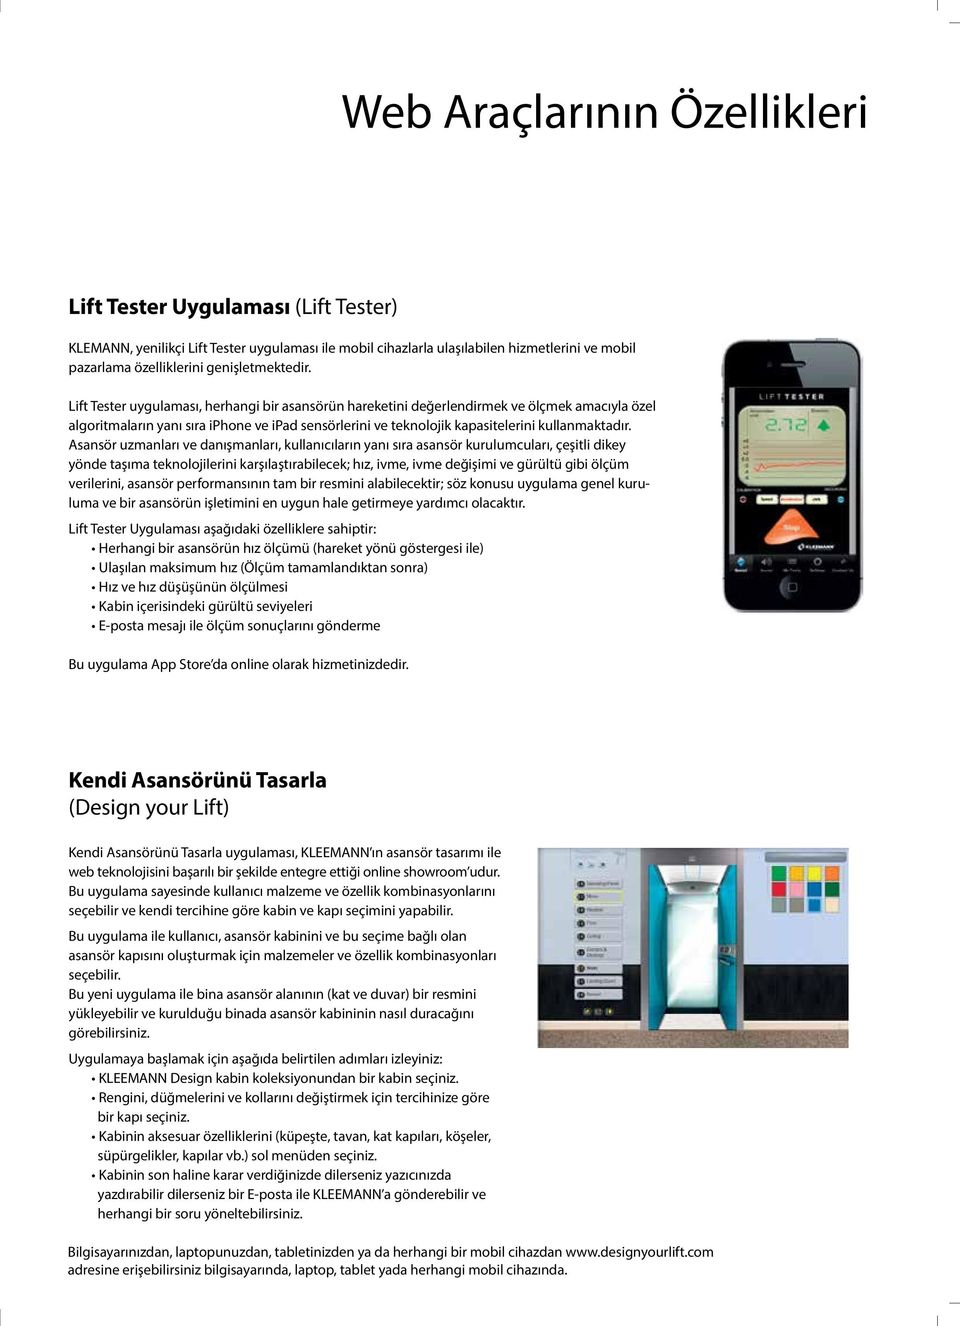 Lift Tester uygulaması, herhangi bir asansörün hareketini değerlendirmek ve ölçmek amacıyla özel algoritmaların yanı sıra iphone ve ipad sensörlerini ve teknolojik kapasitelerini kullanmaktadır.